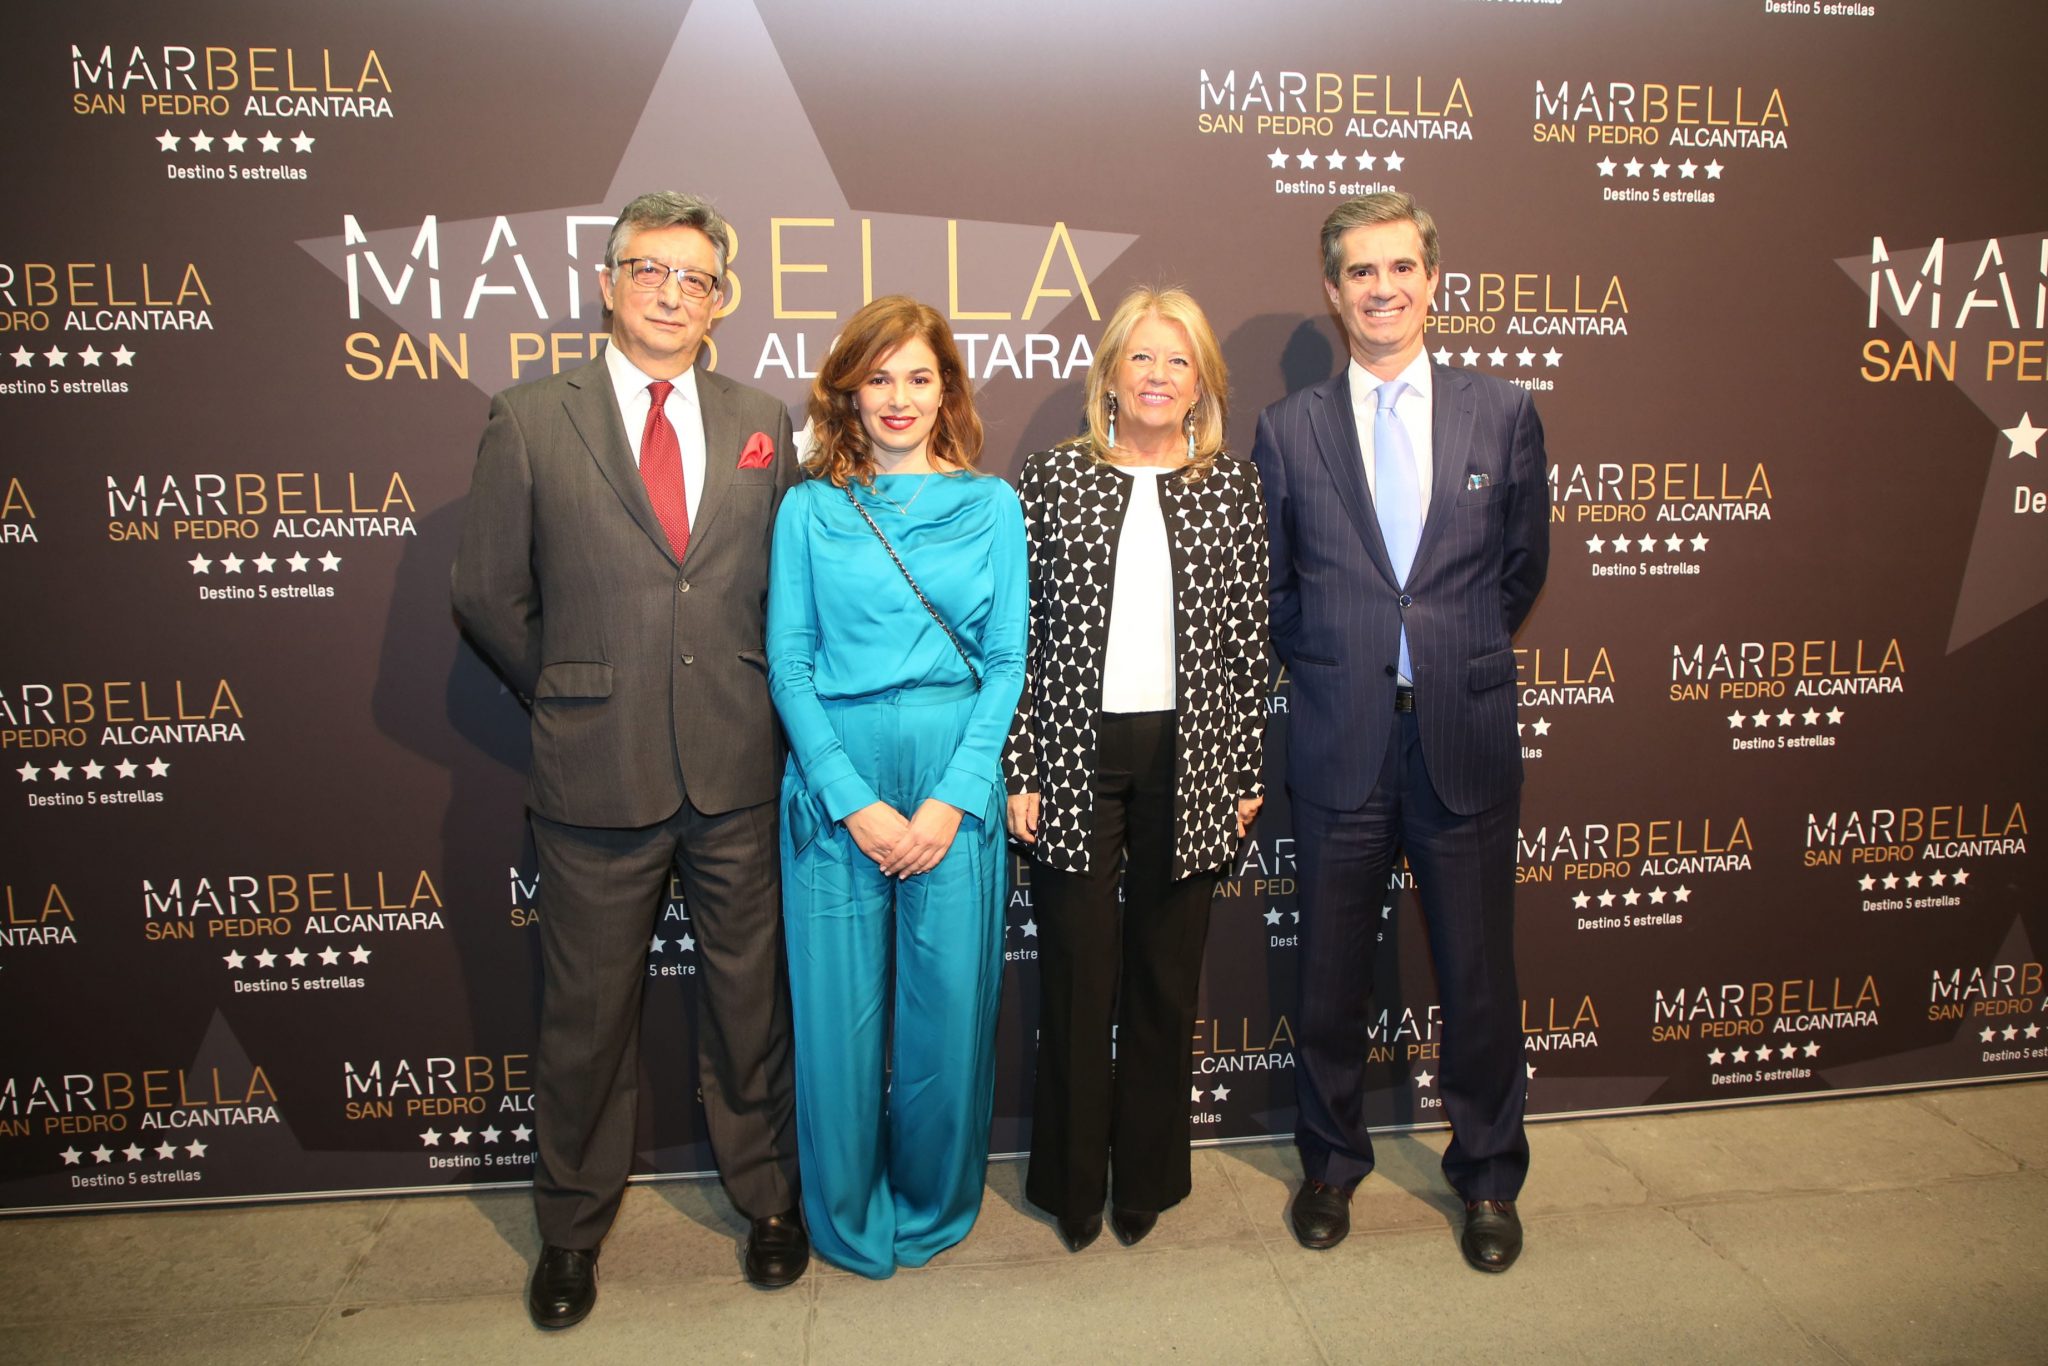 La alcaldesa resalta la fortaleza de la marca Marbella y la excelencia de la oferta turística como destino